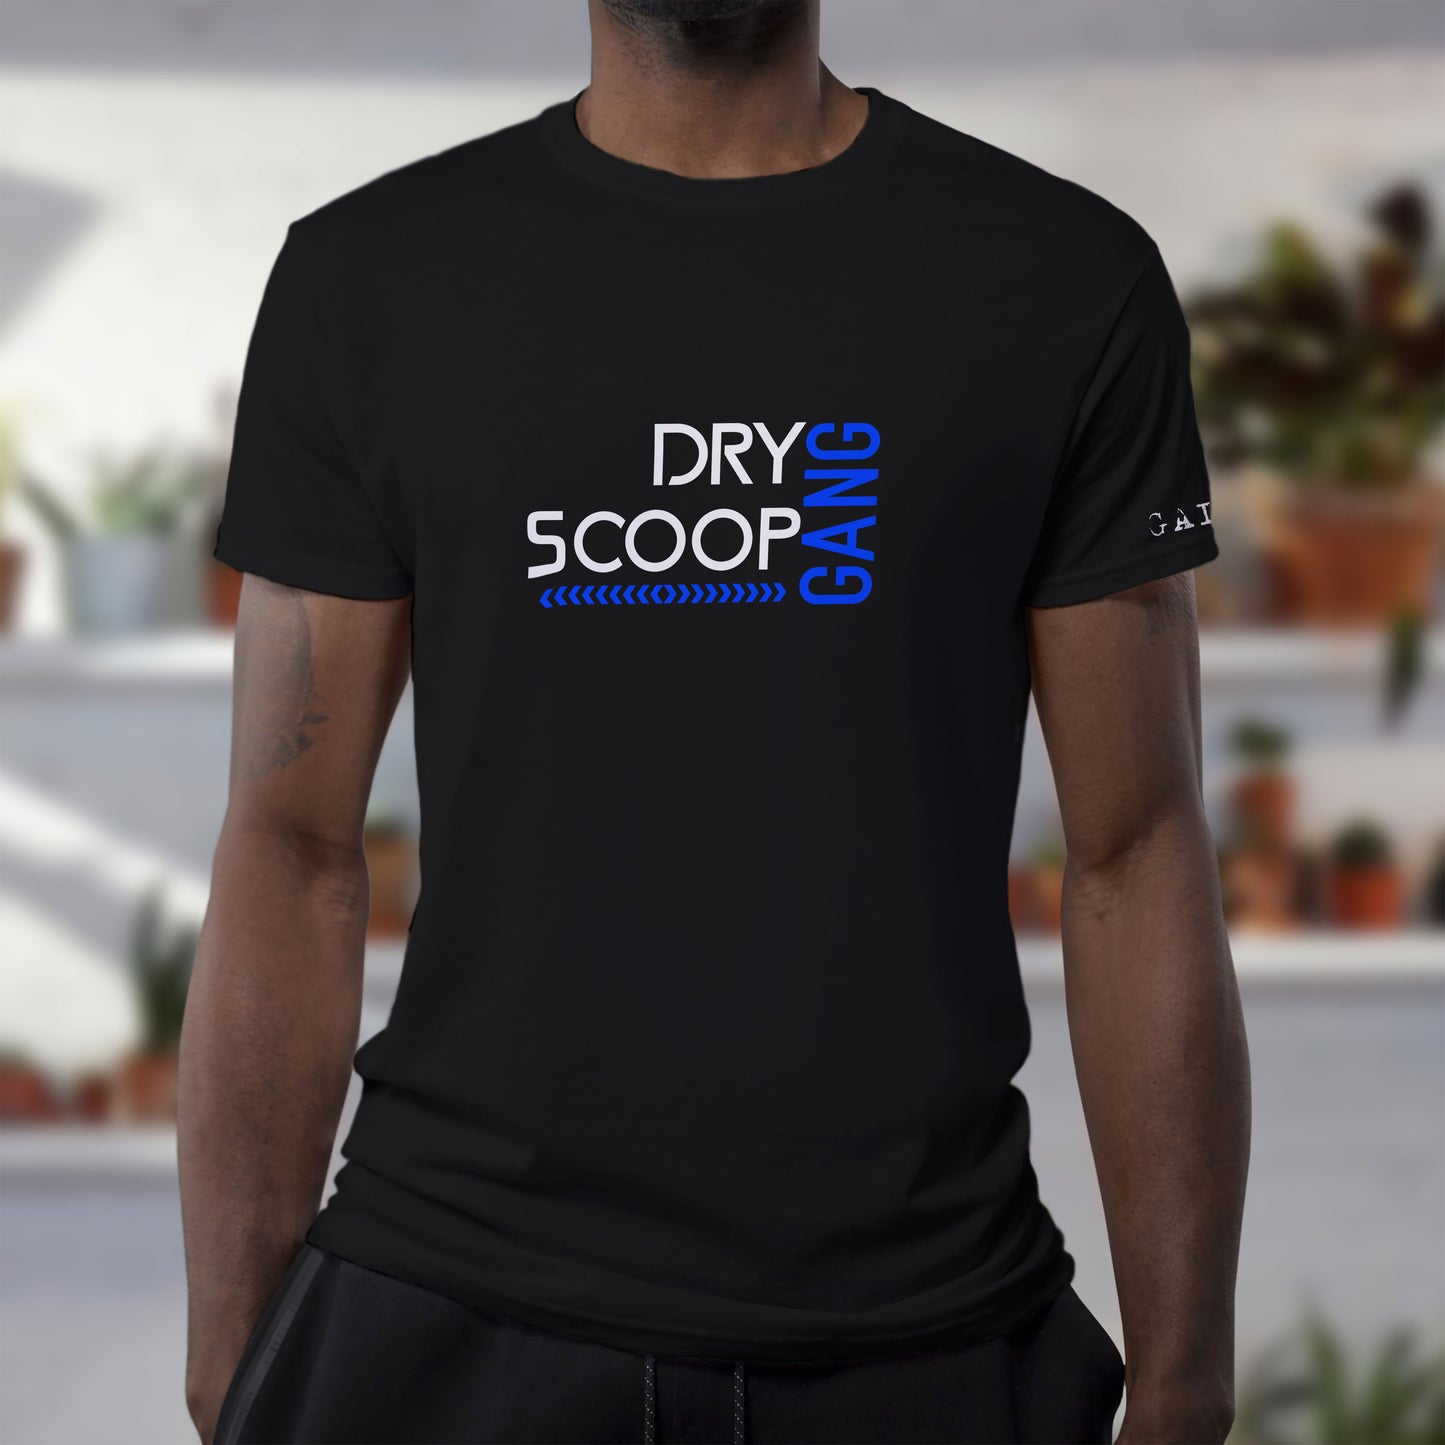 Dry Scoop Gang tee